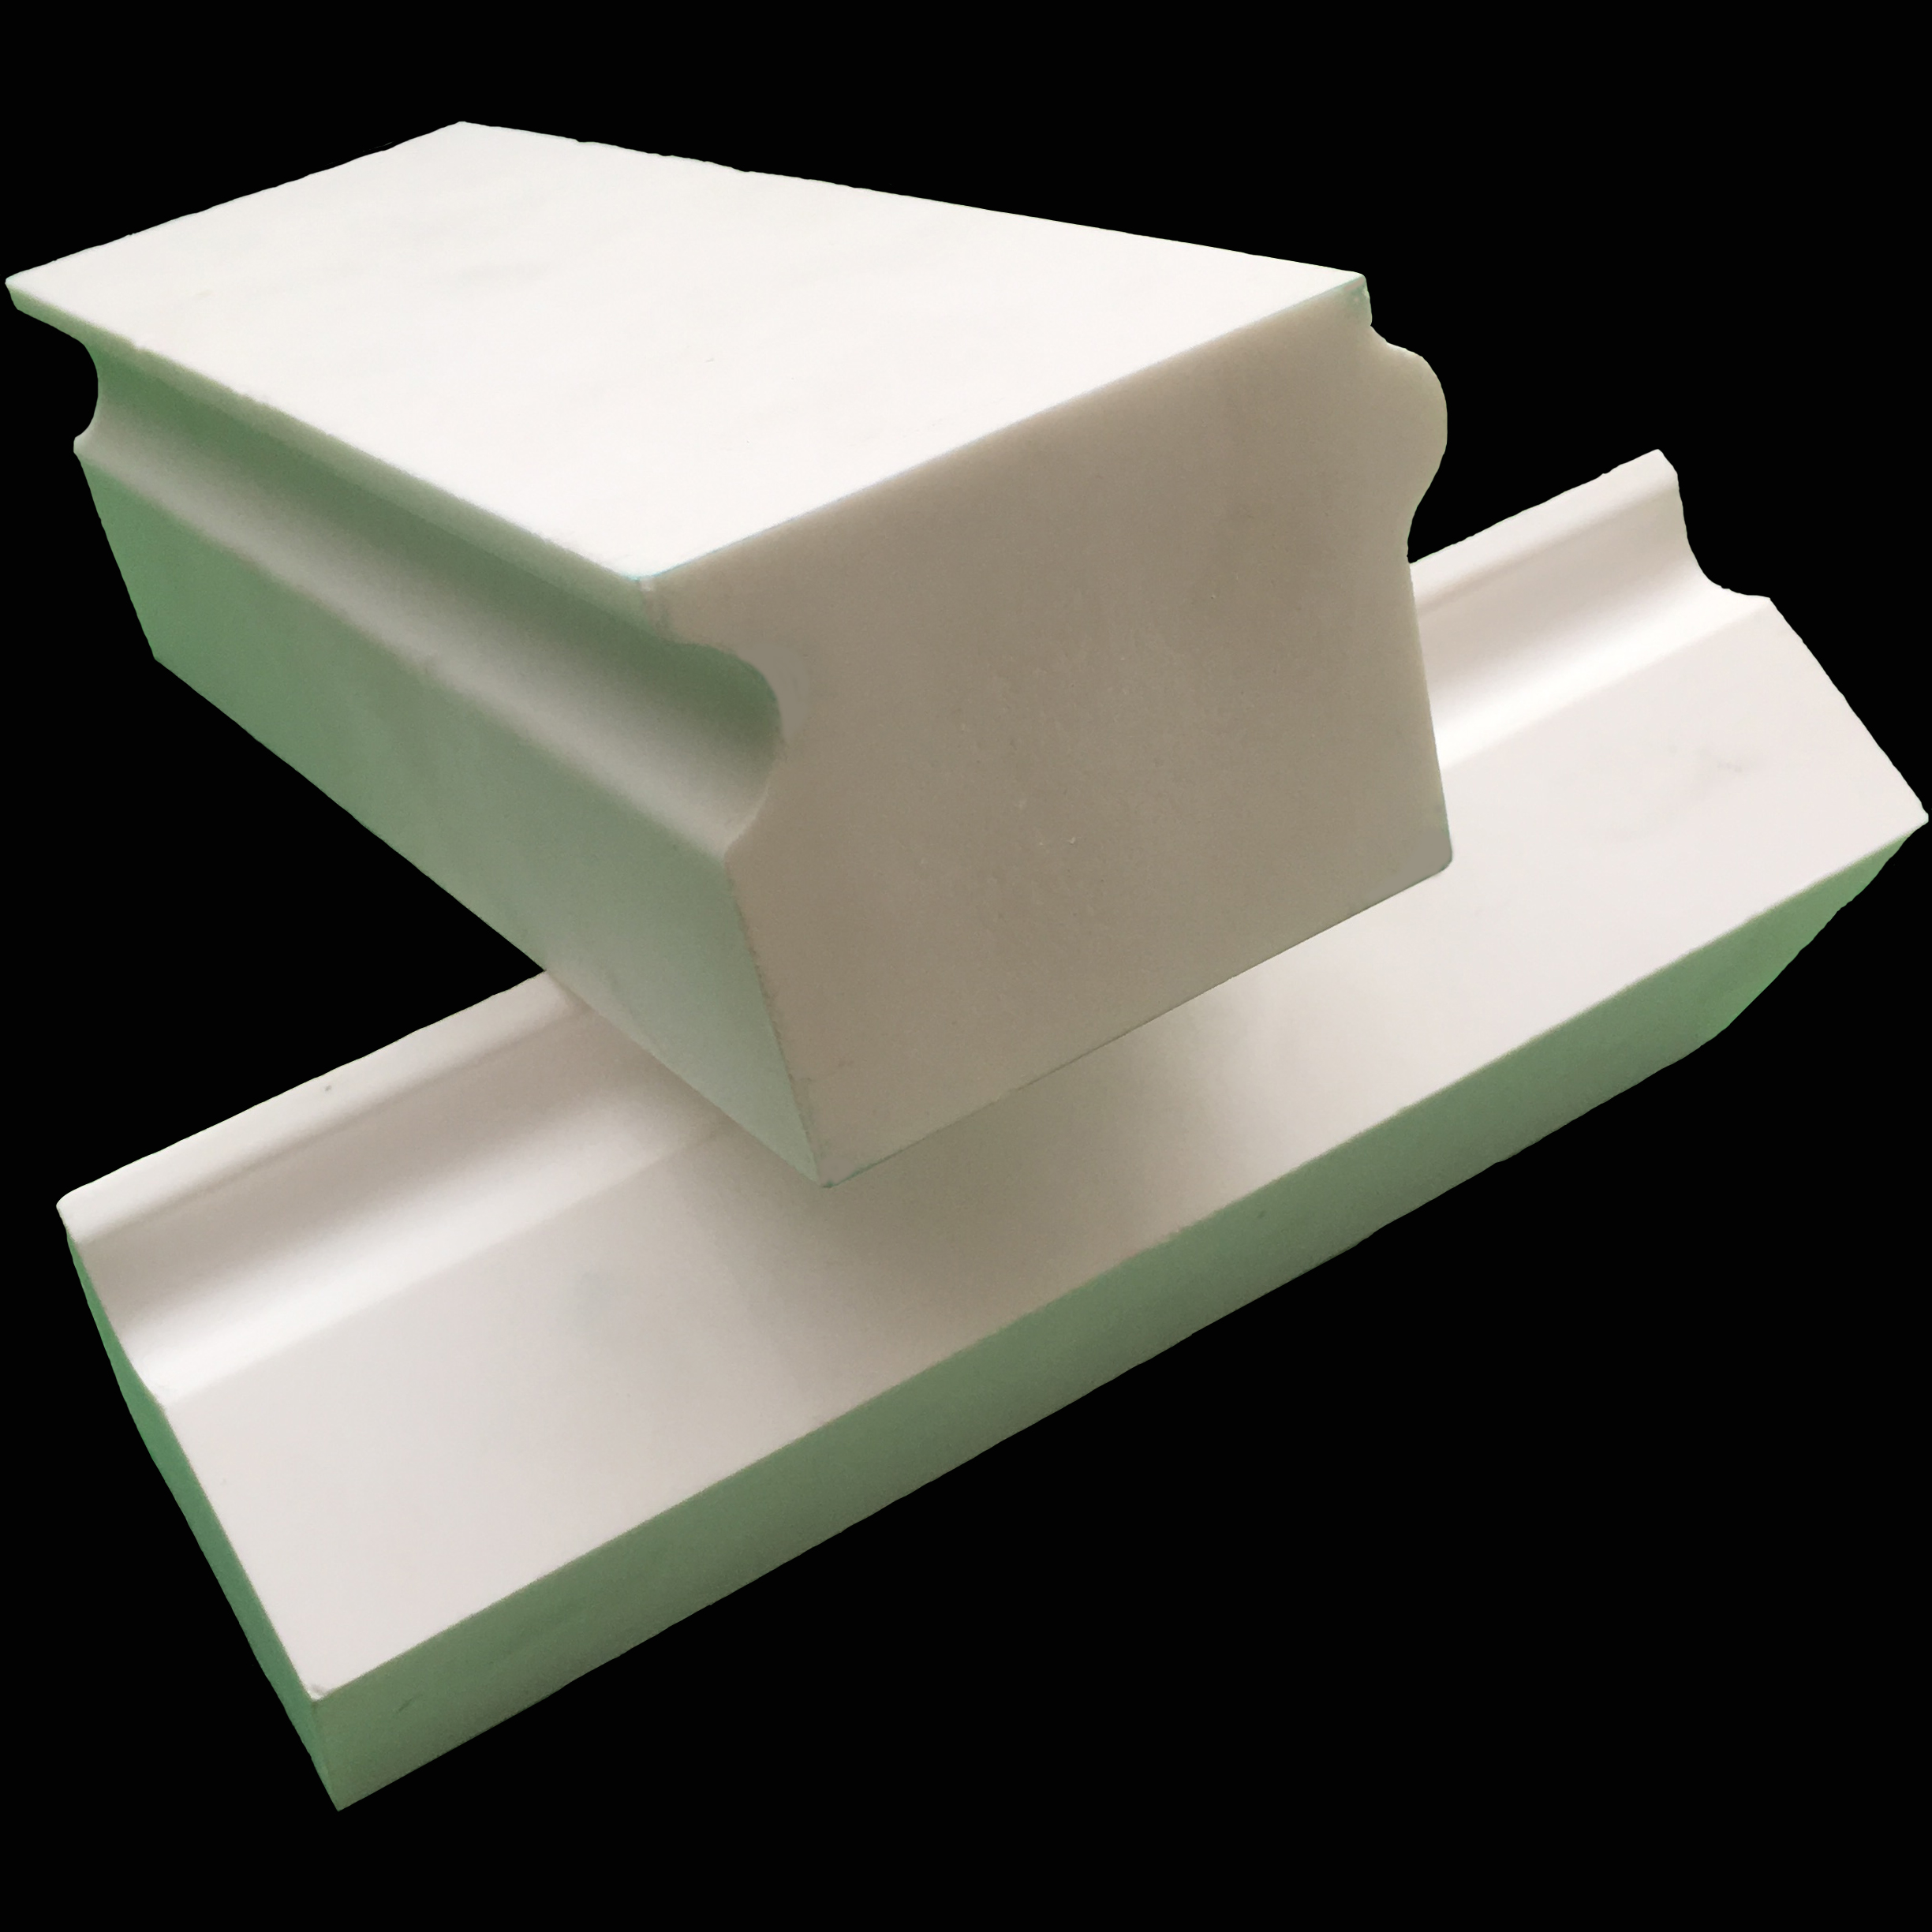 球磨机不同直径的常规配氧化铝陶瓷衬砖厚度是多少